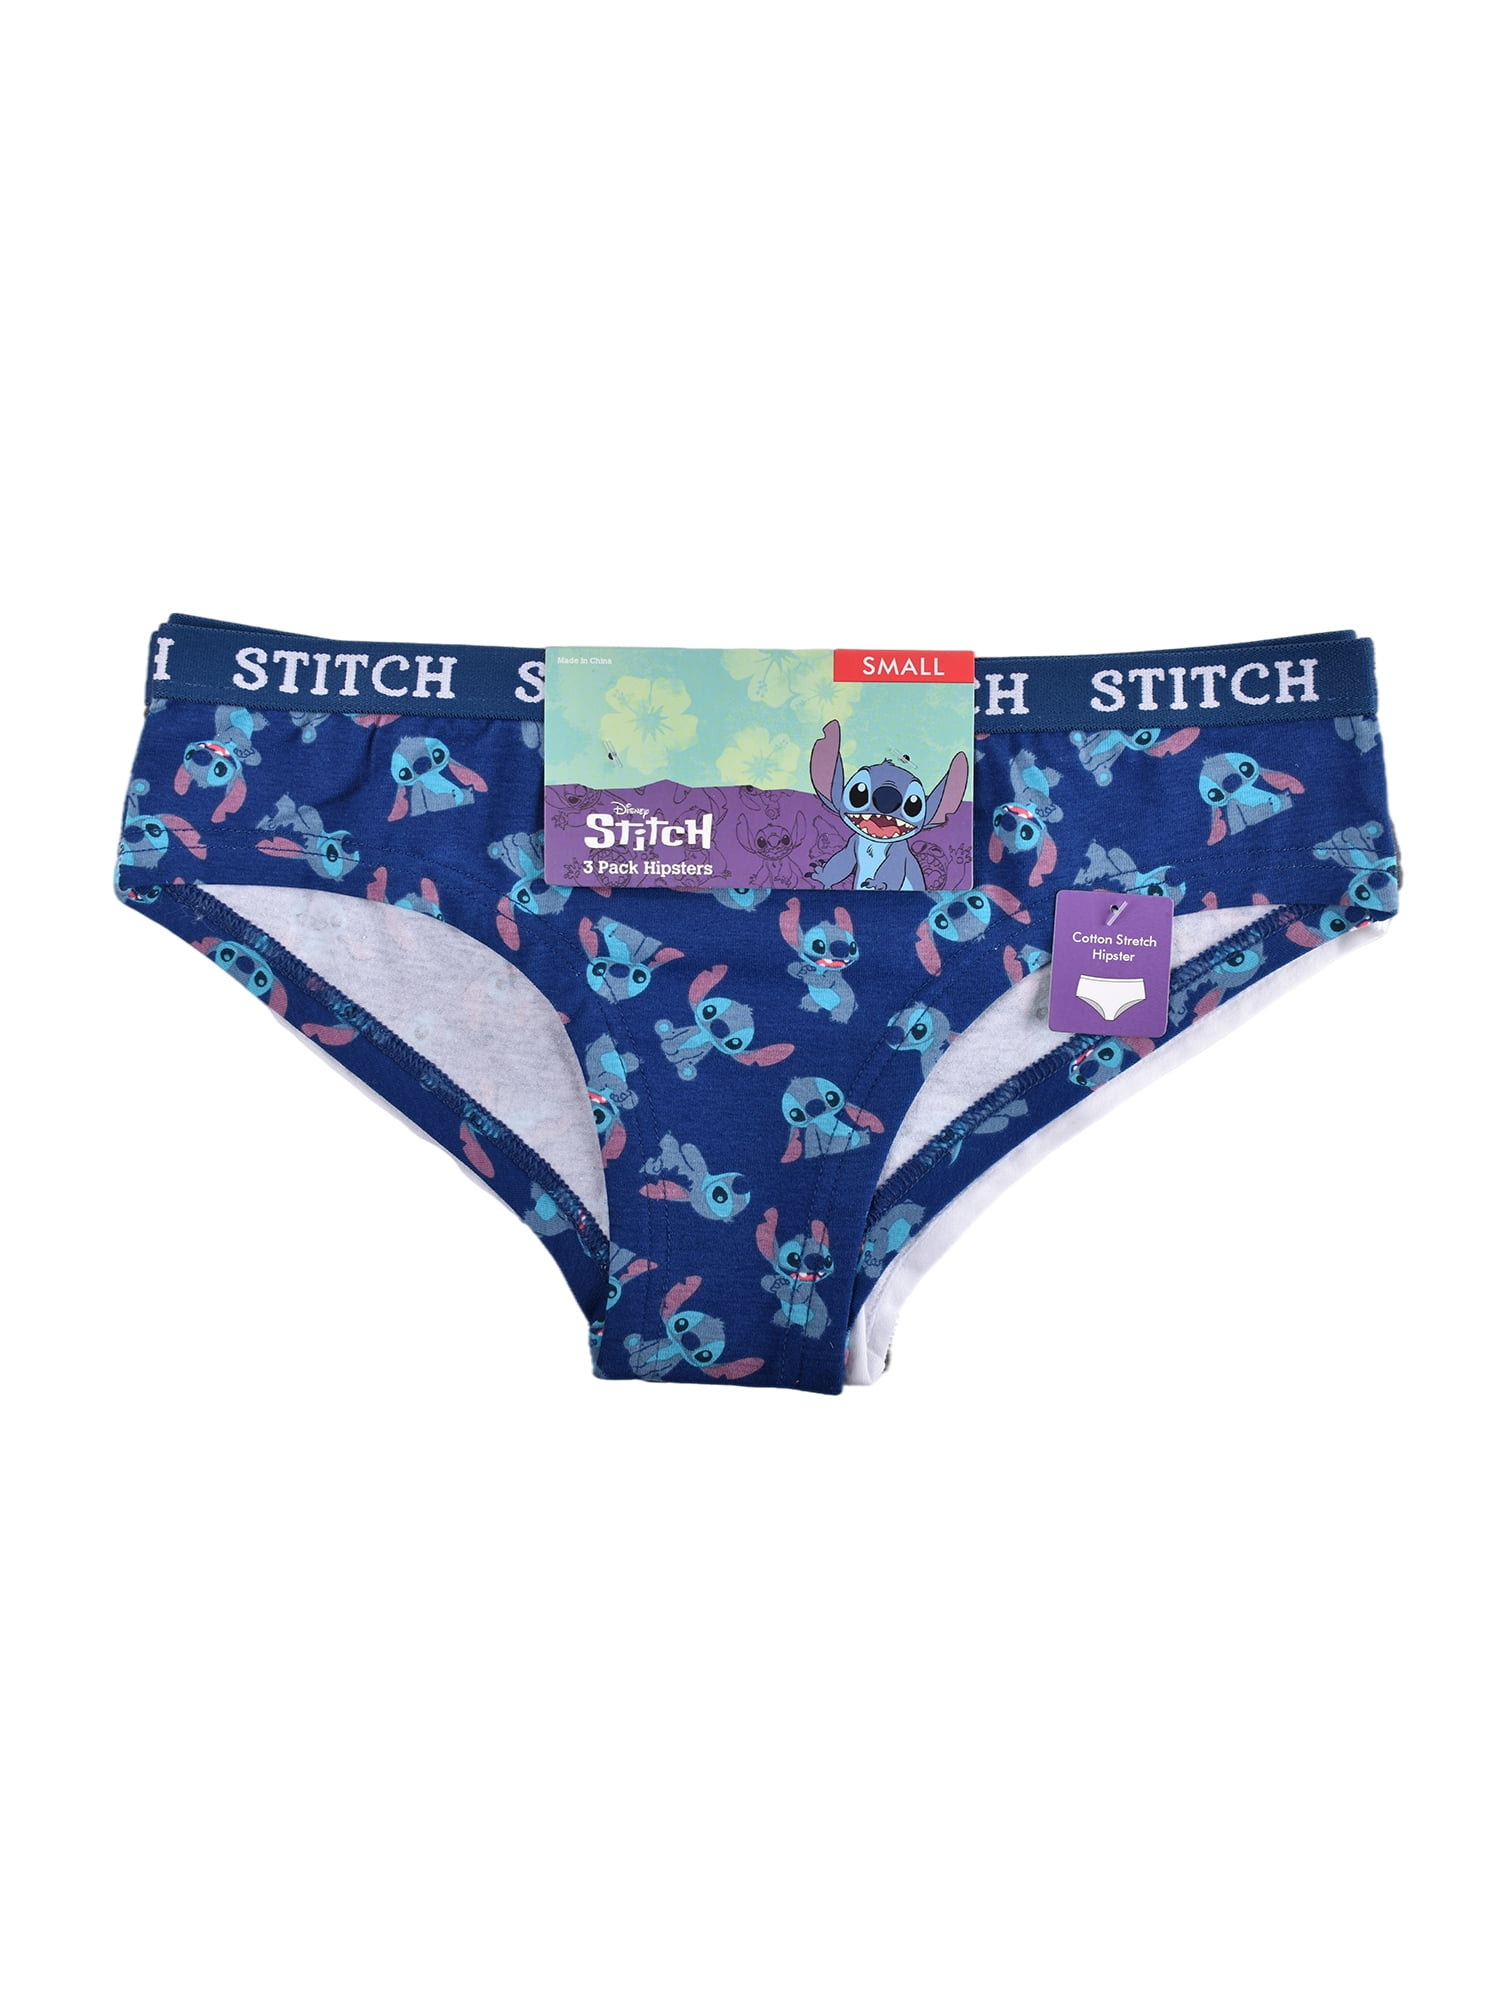 Disney Stitch Girls Stretch Hipster Briefs Underwear, 4-Pack Sizes 6-10 